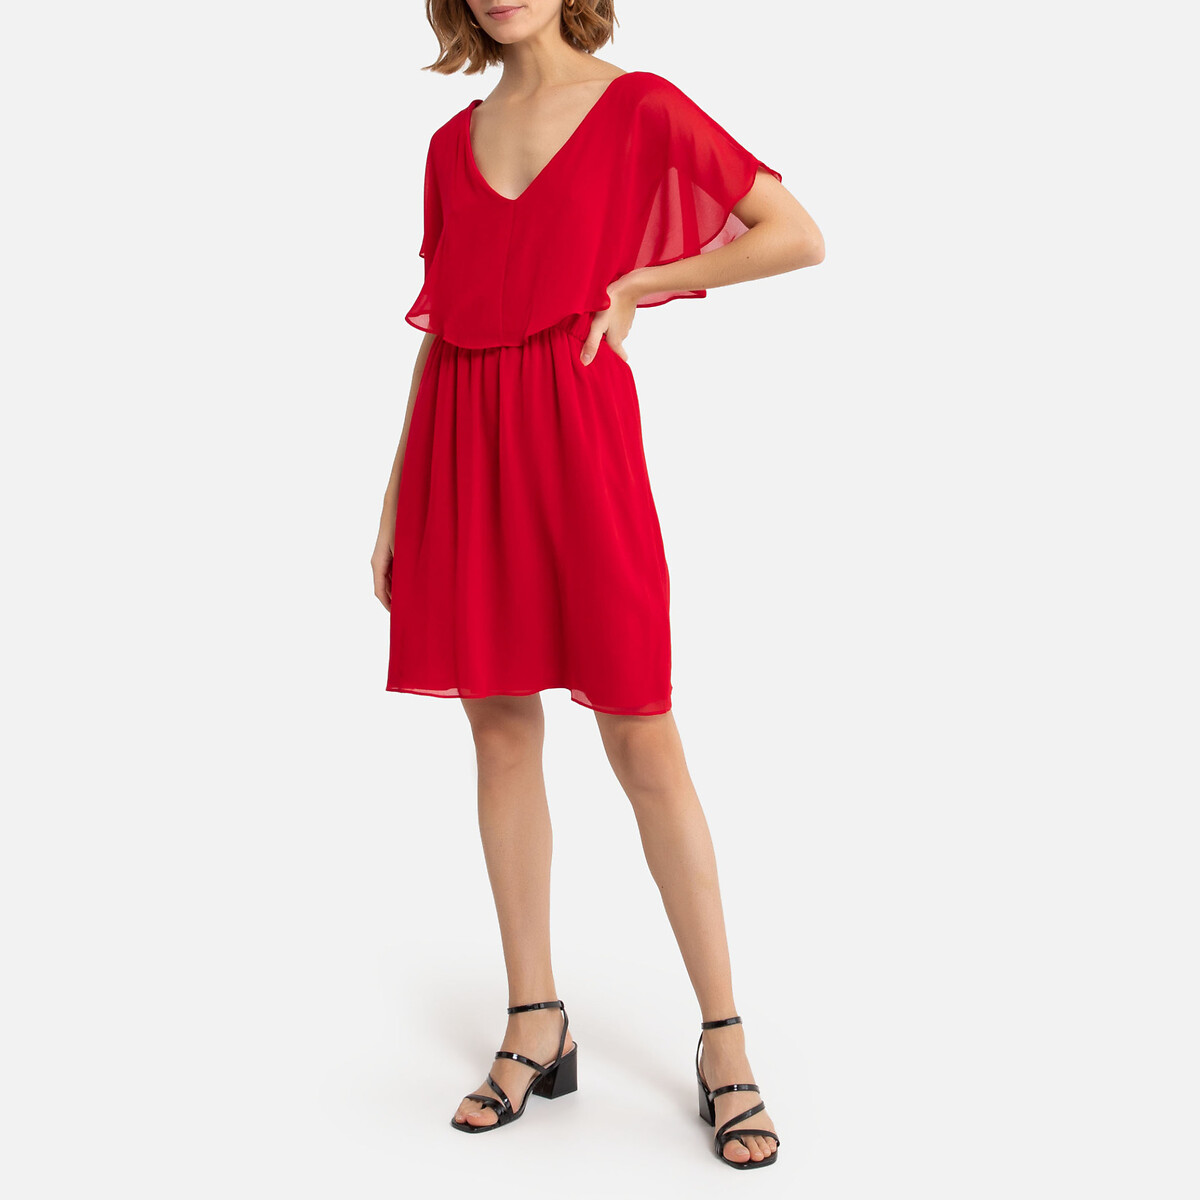 Платье La Redoute Укороченное с V-образным вырезом 36 (FR) - 42 (RUS) красный, размер 36 (FR) - 42 (RUS) Укороченное с V-образным вырезом 36 (FR) - 42 (RUS) красный - фото 2